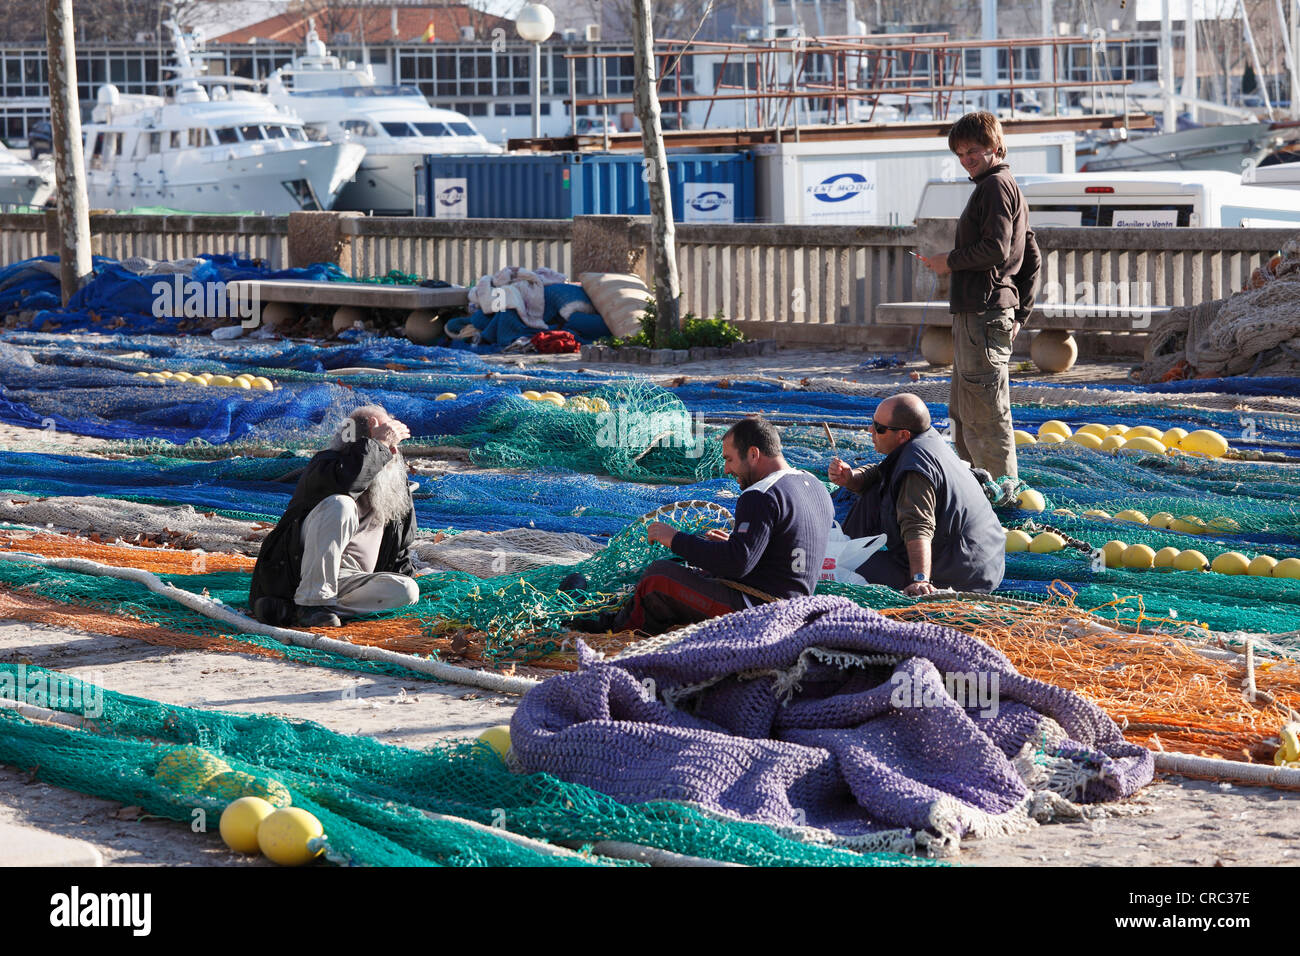 Los pescadores arreglar las redes de pesca, puerto pesquero, Palma de Mallorca, Mallorca, Islas Baleares, España, Europa Foto de stock